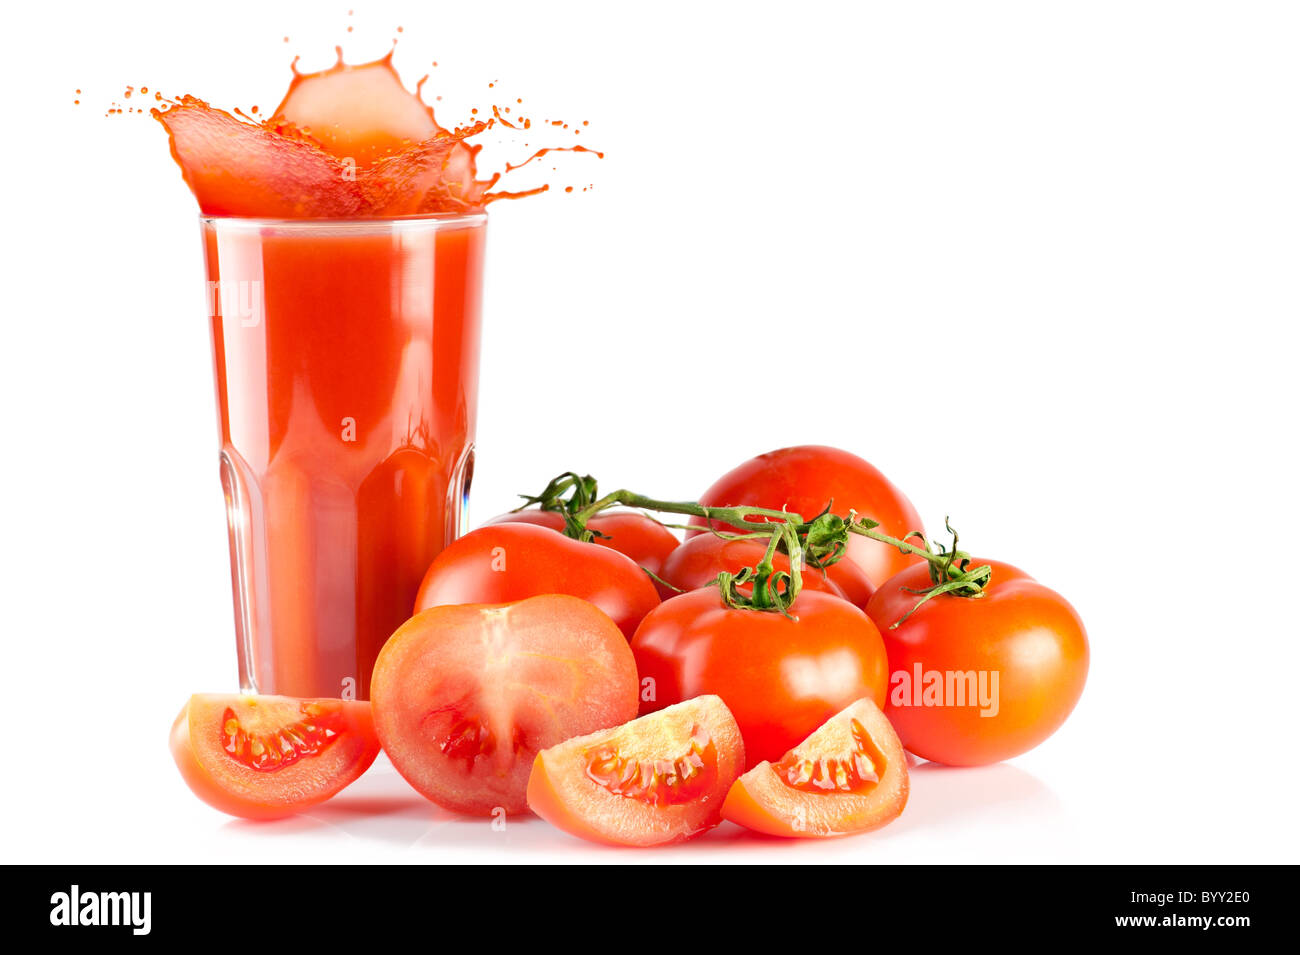 Succo di pomodoro. Pomodori maturi e un bicchiere di succo di pomodoro con splash isolati su sfondo bianco Foto Stock